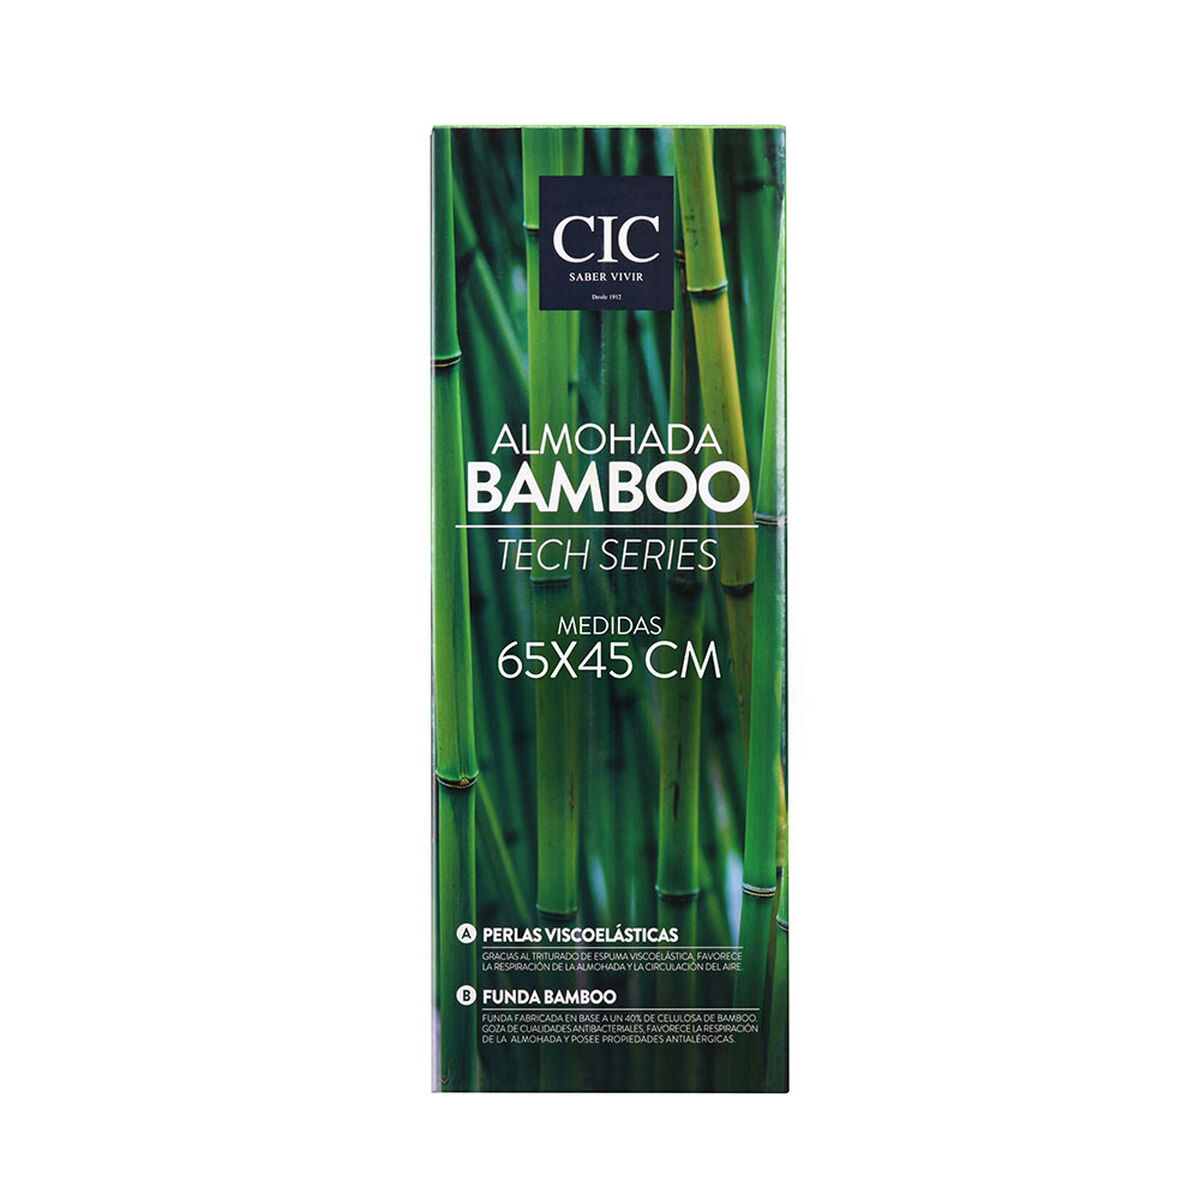 Almohada CIC Bamboo Tech Series 65 x 45 cm